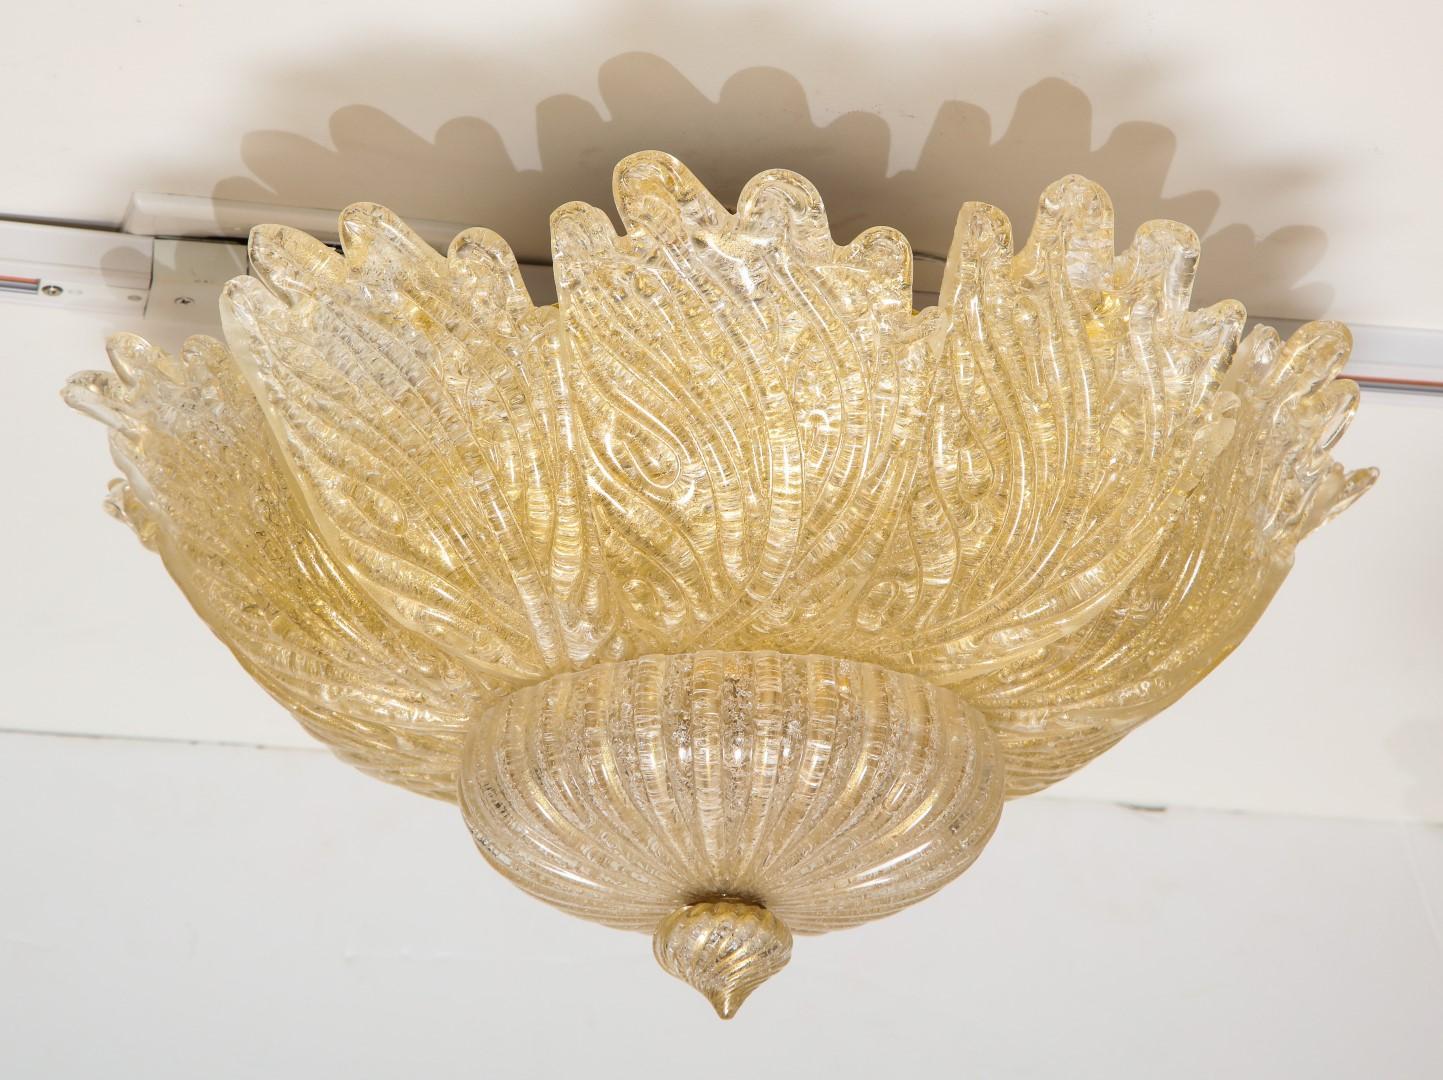 A Venetian Murano flower form ceiling light, handblown leaf-form golden powder glass panels, centring a spiral form finial.